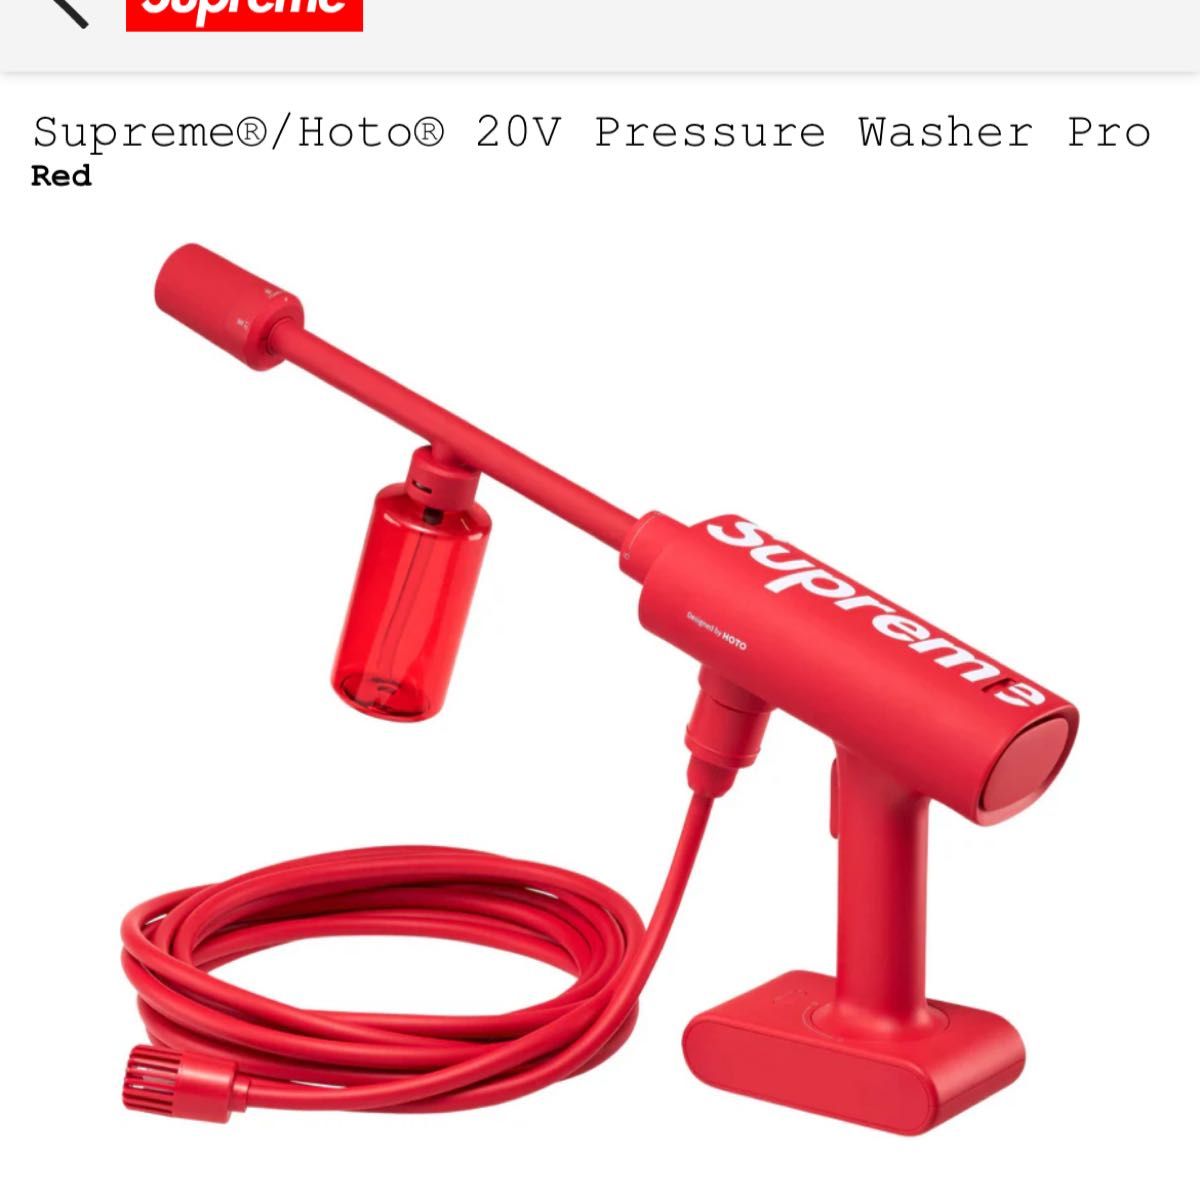 Supreme Hoto 20V Pressure Washer Pro Red